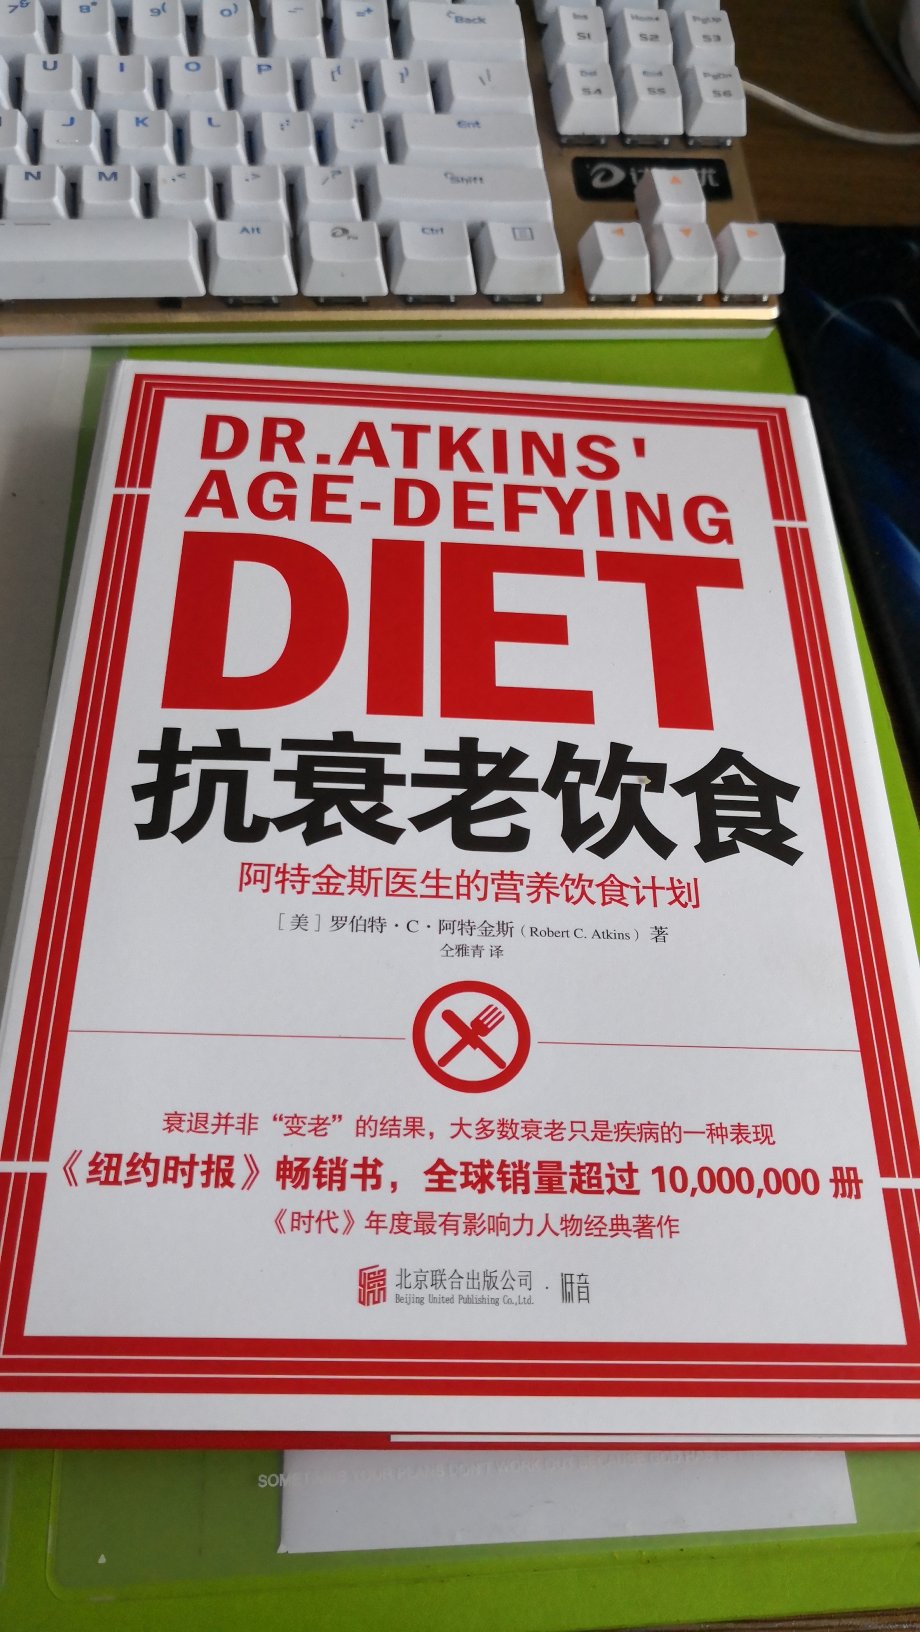 很棒的一本书。倡导健康生活方式，内容易懂。